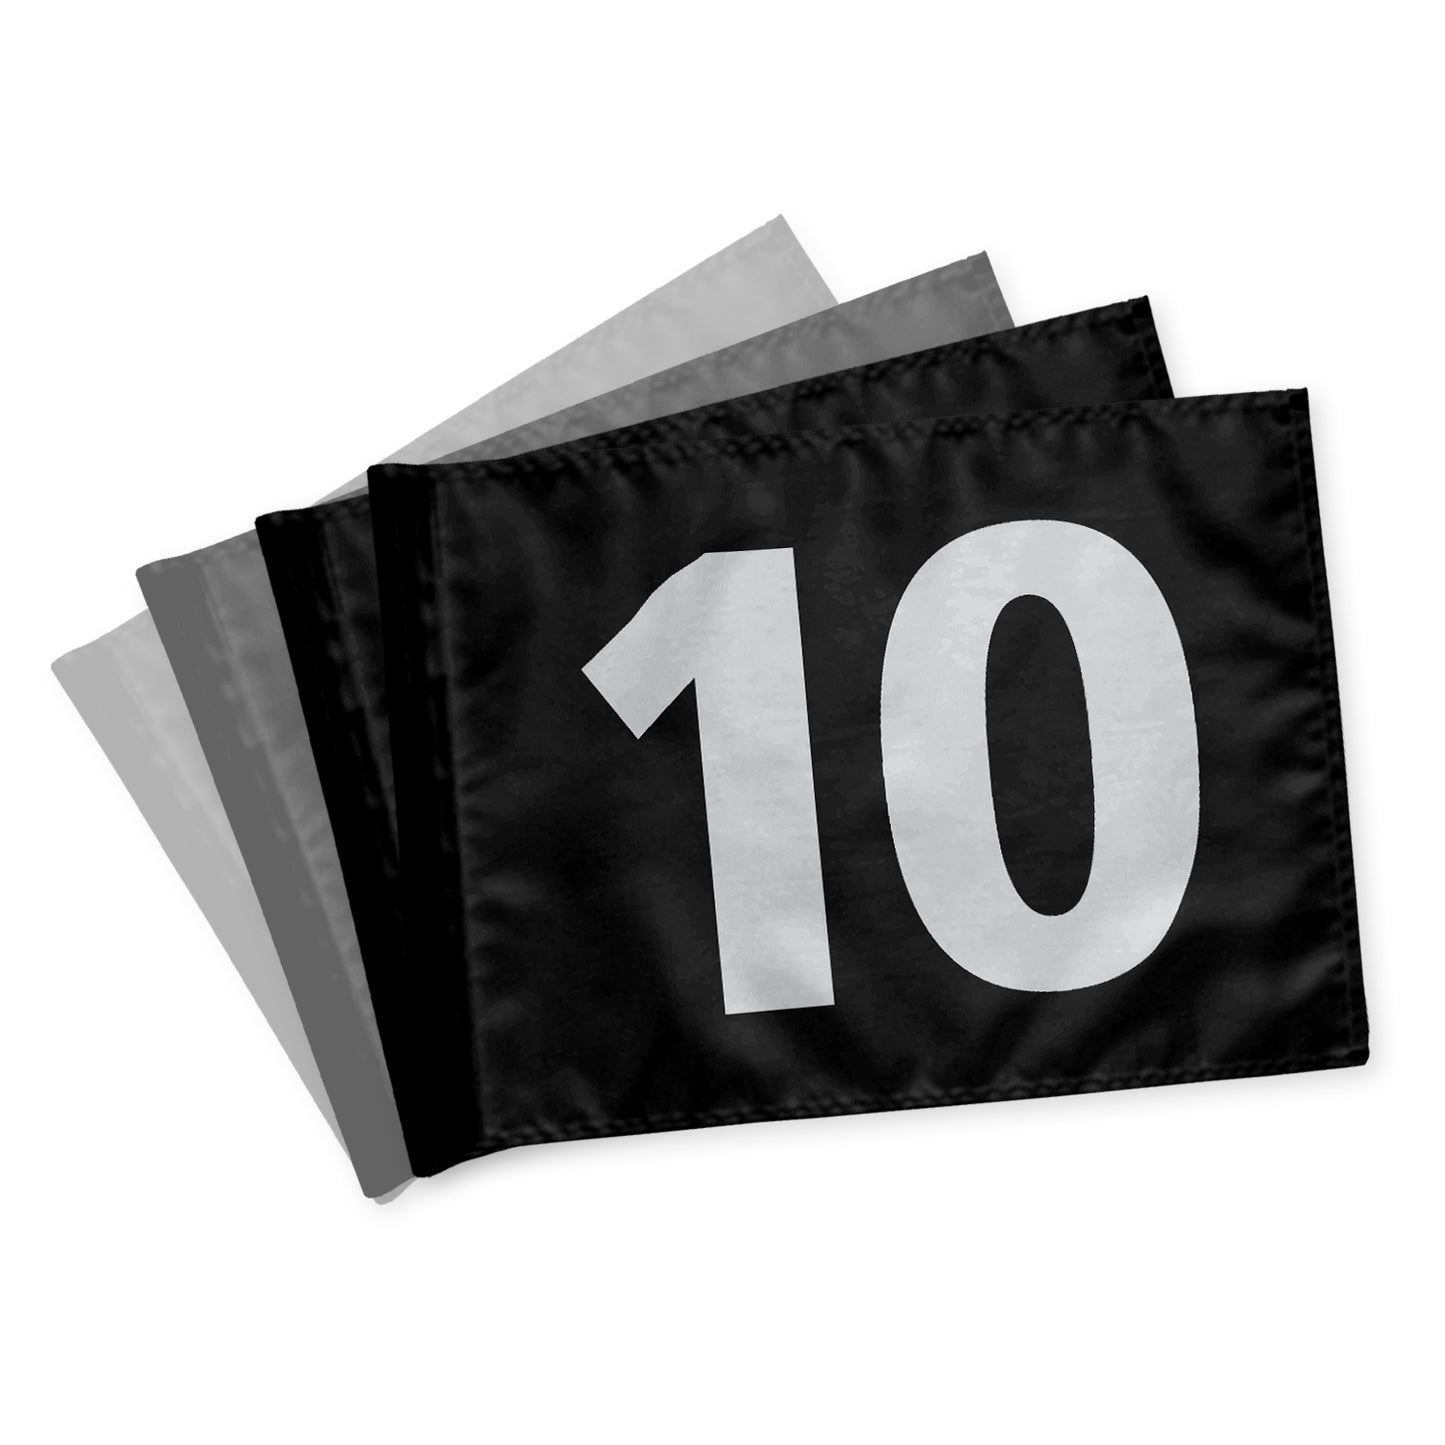 Puttinggreenflag, 10-18, afstivet, sorte med hvide tal, 200 gram flagdug